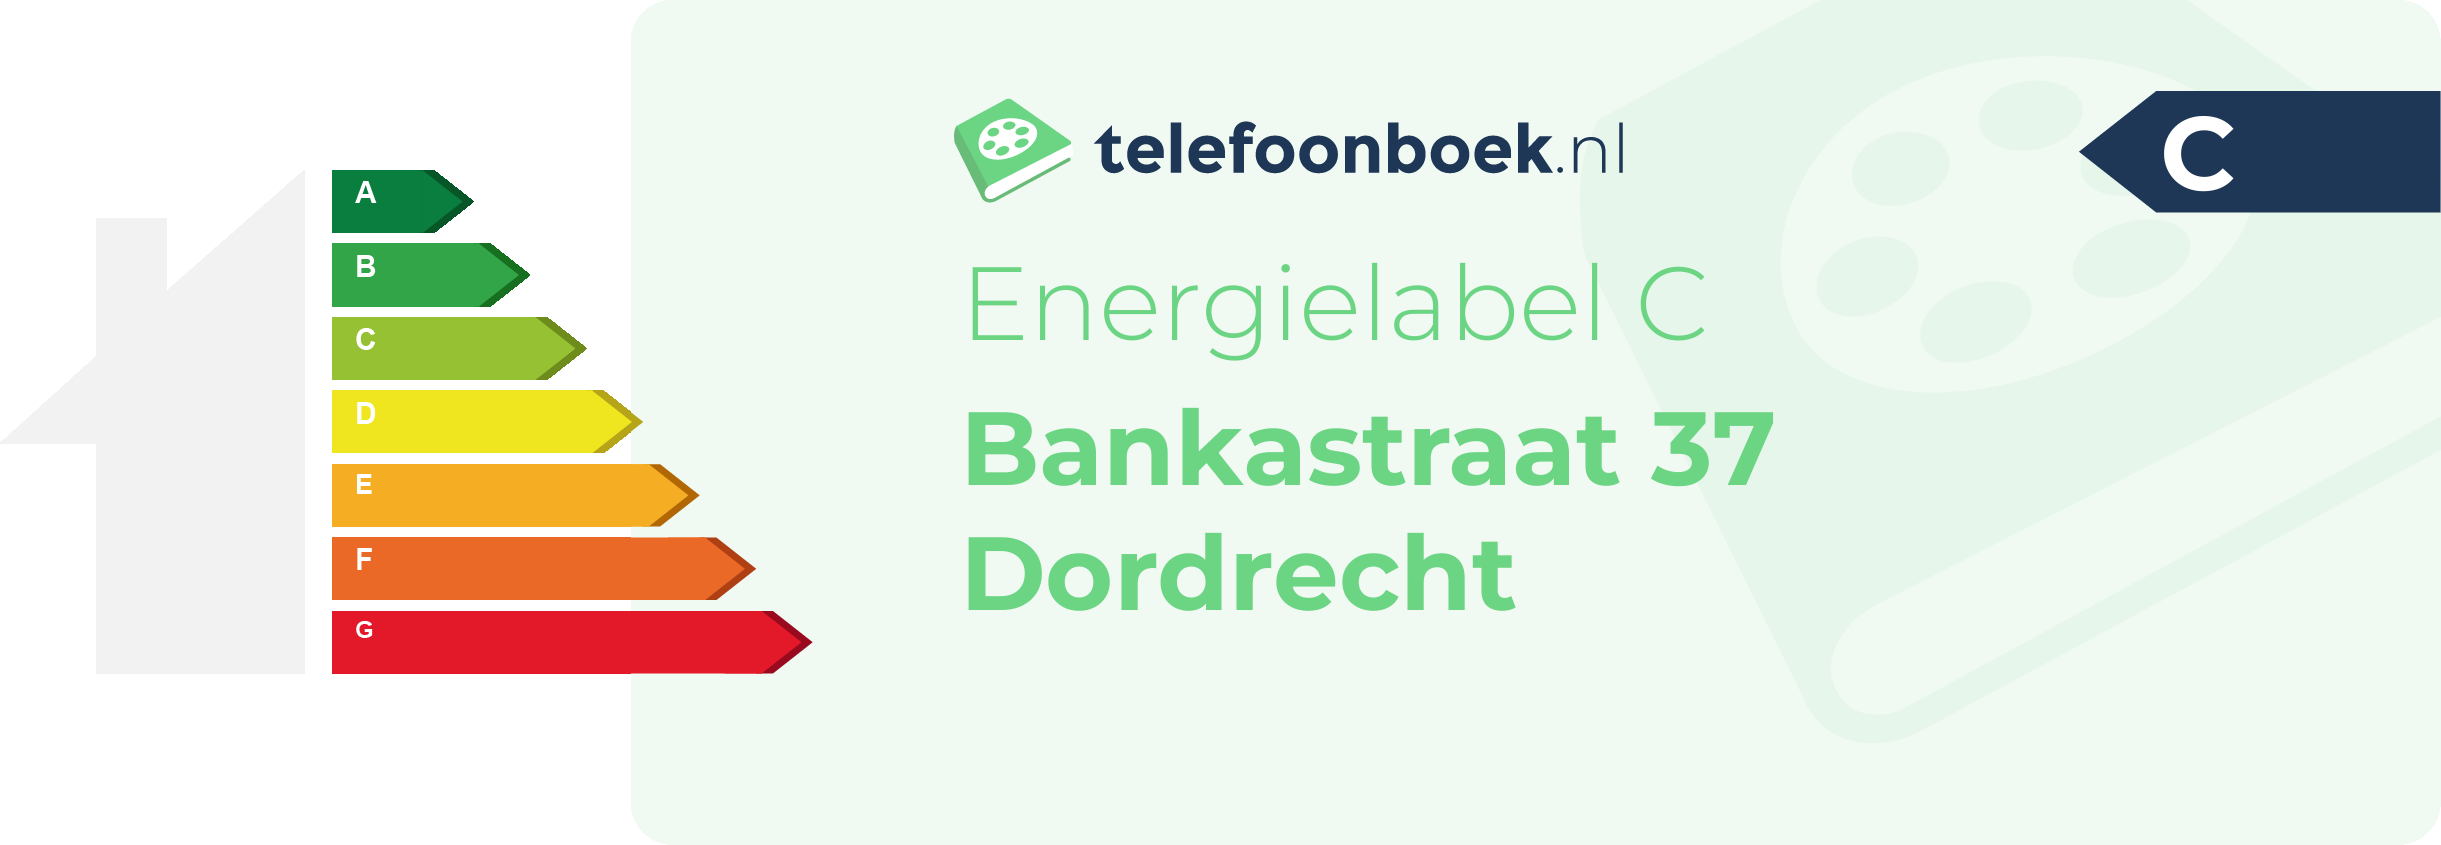 Energielabel Bankastraat 37 Dordrecht